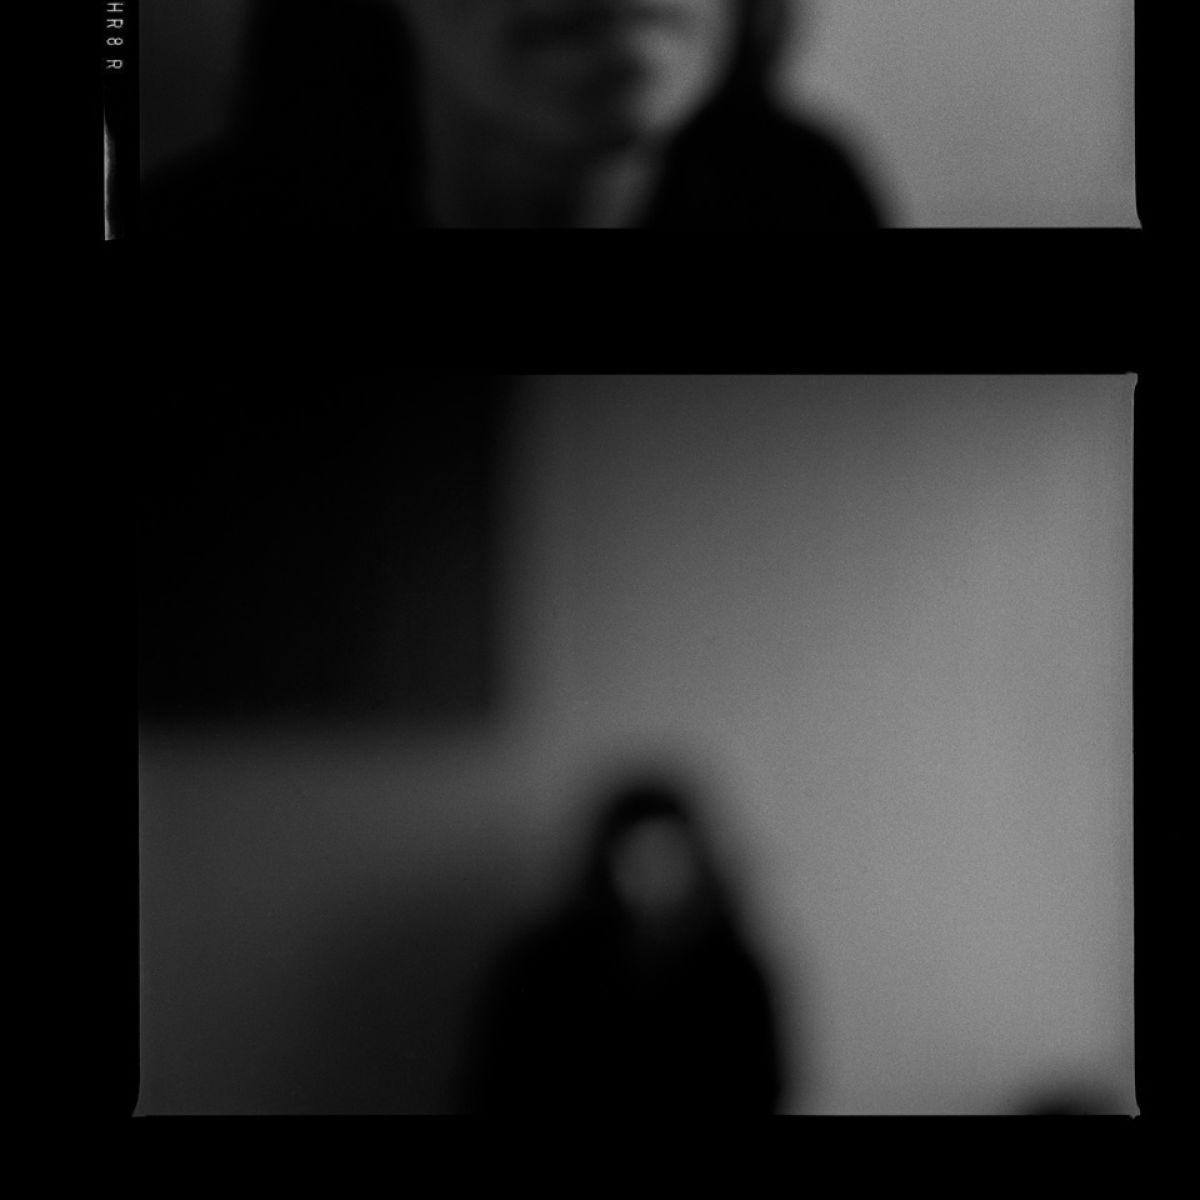 Zapraszamy na nową wystawę: Krzysztof Gierałtowski. Portret bez twarzy